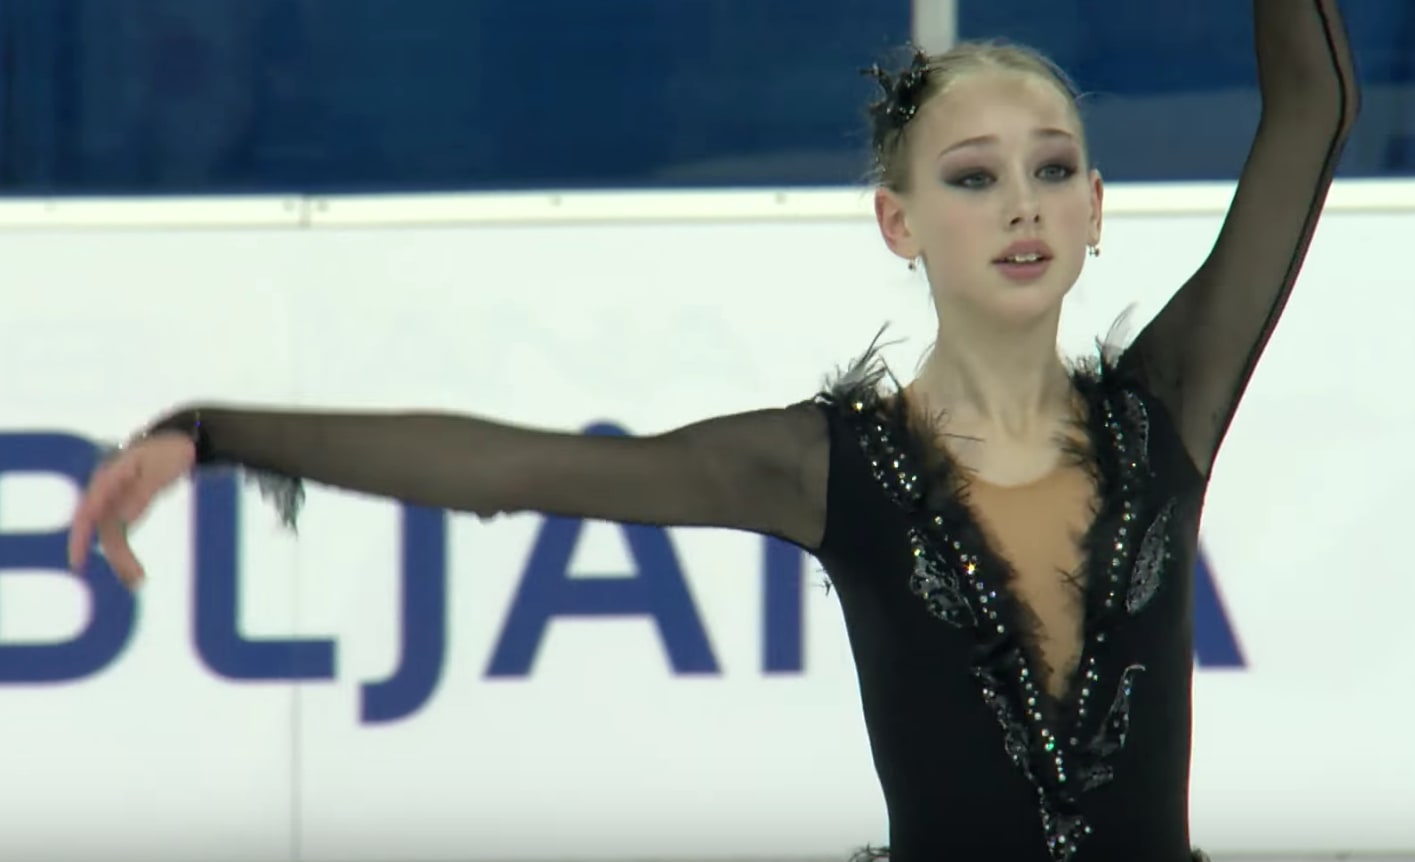 16 17 フィギュアスケート ロシア女子選手ジュニア 日本語 きのつらゆき Kino Tea